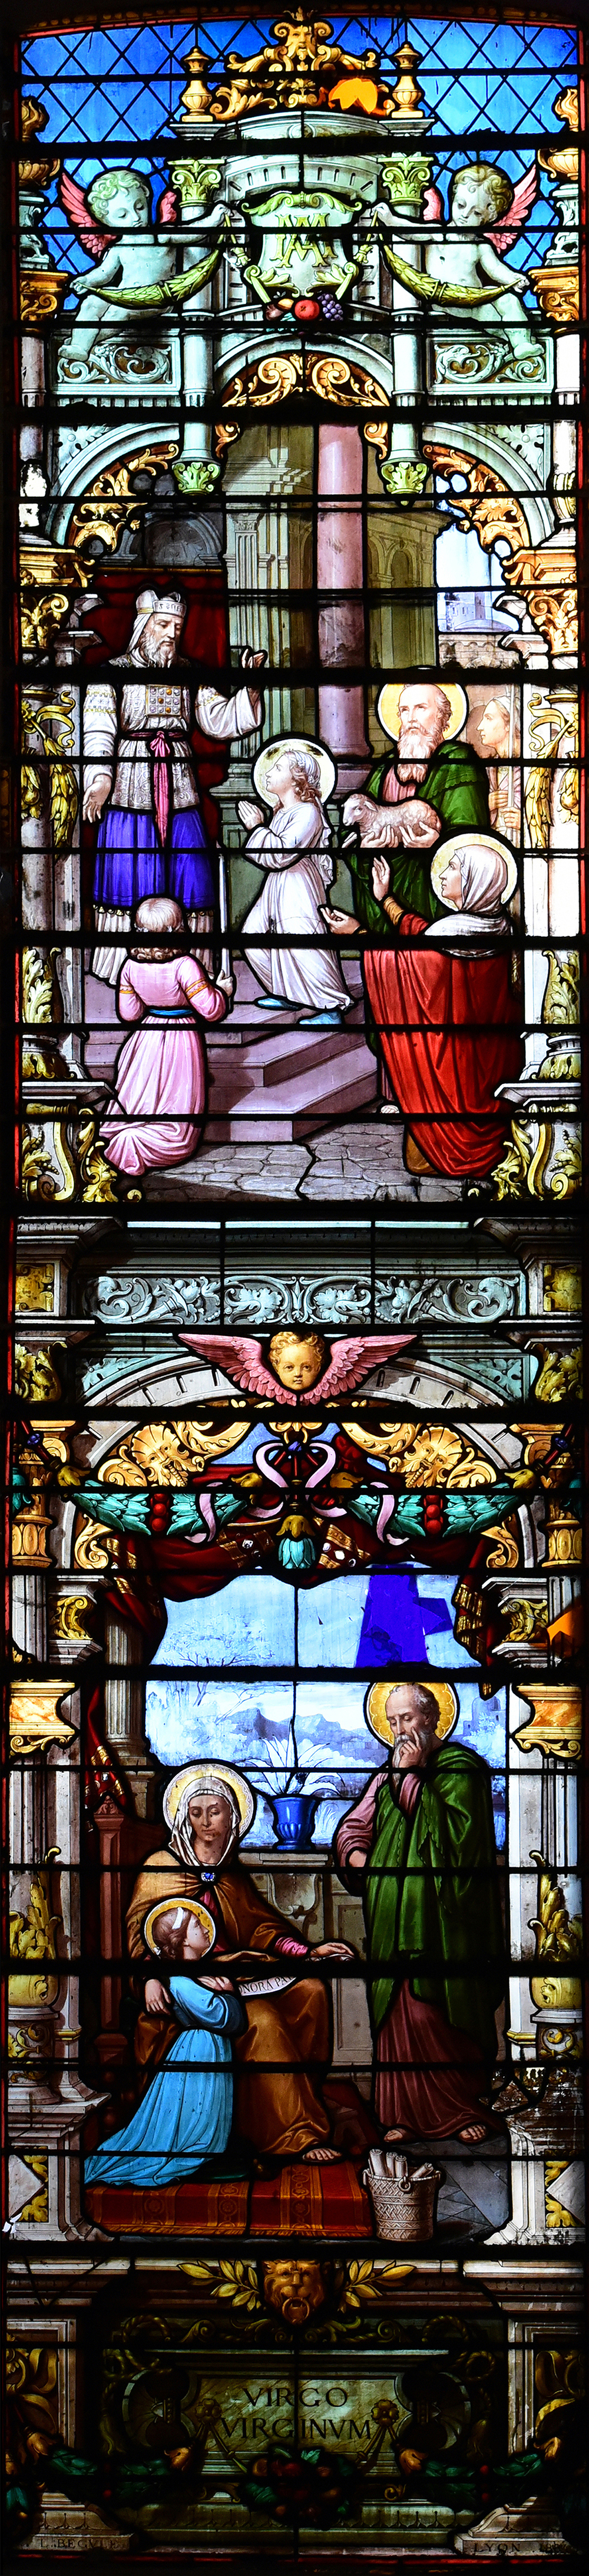 saint- Etienne vitraux Bégule baie 103